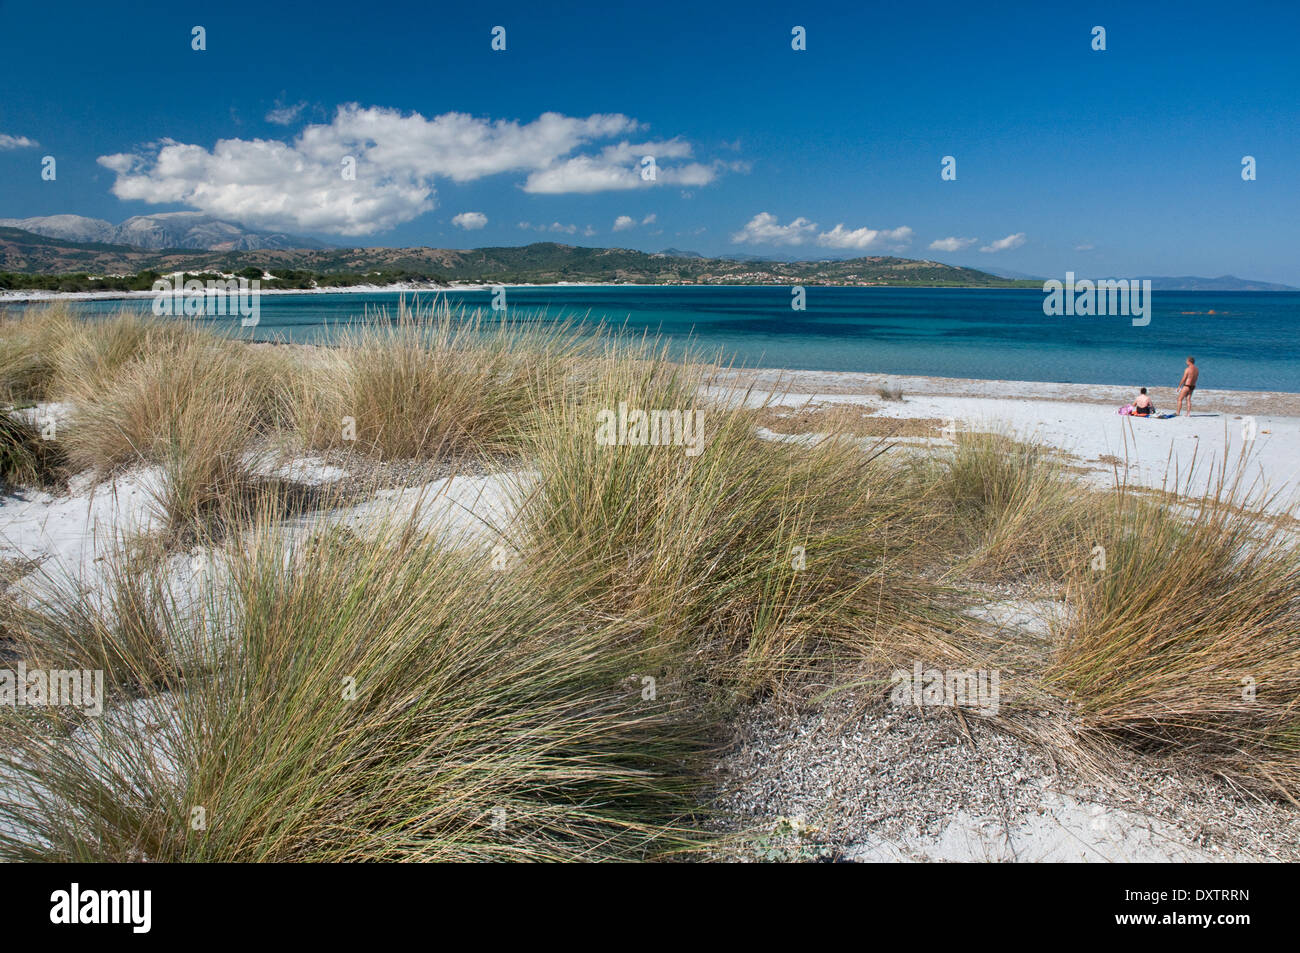 Sand dunes and plants at Capo Comino beach, Siniscola, east coast of Sardinia, Italy Stock Photo